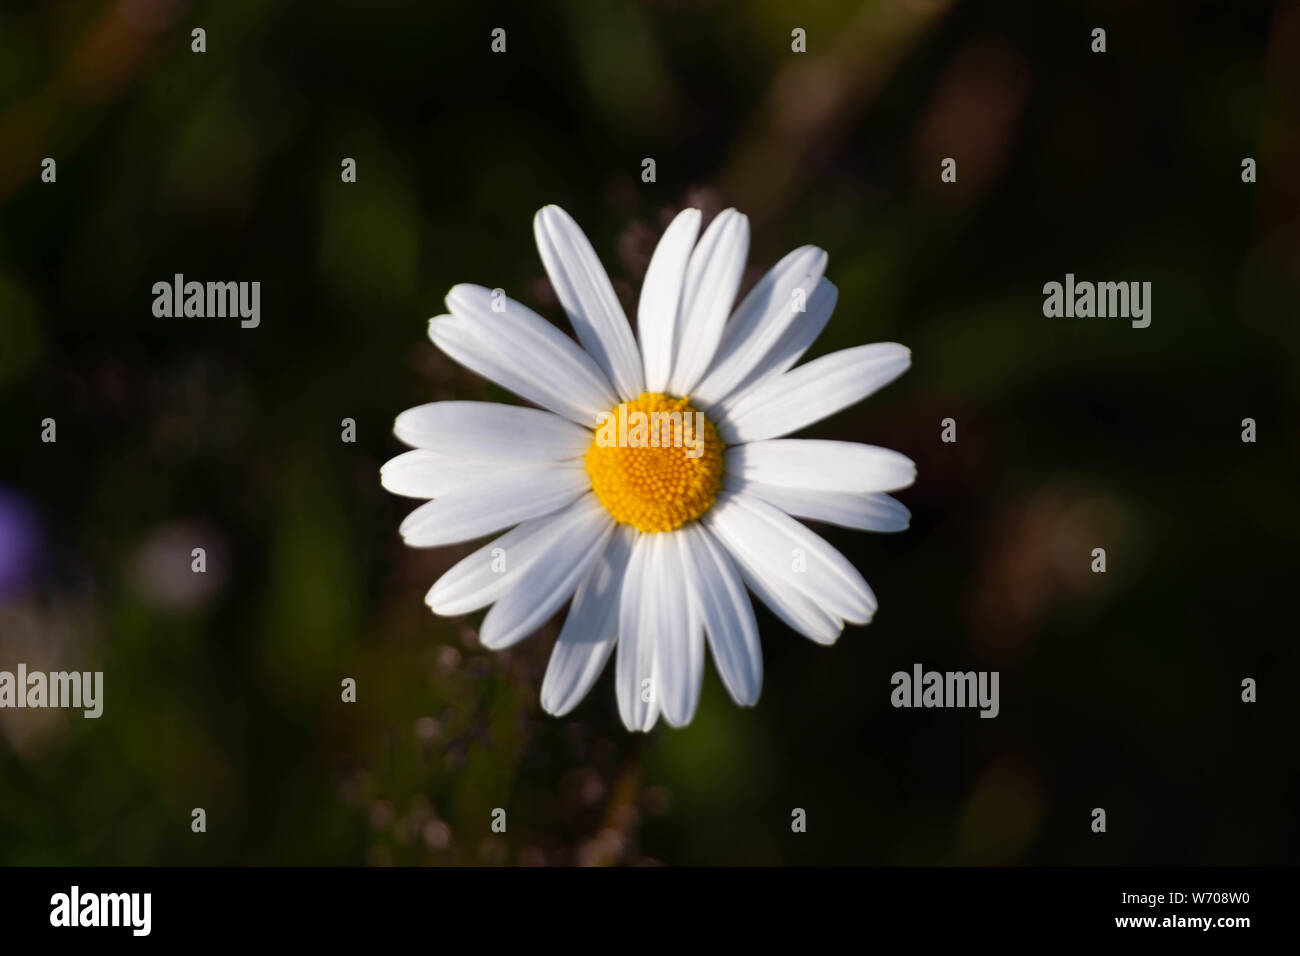 Daisy flower,Hailuoto island, Northern Ostrobothnia, Finland Stock Photo